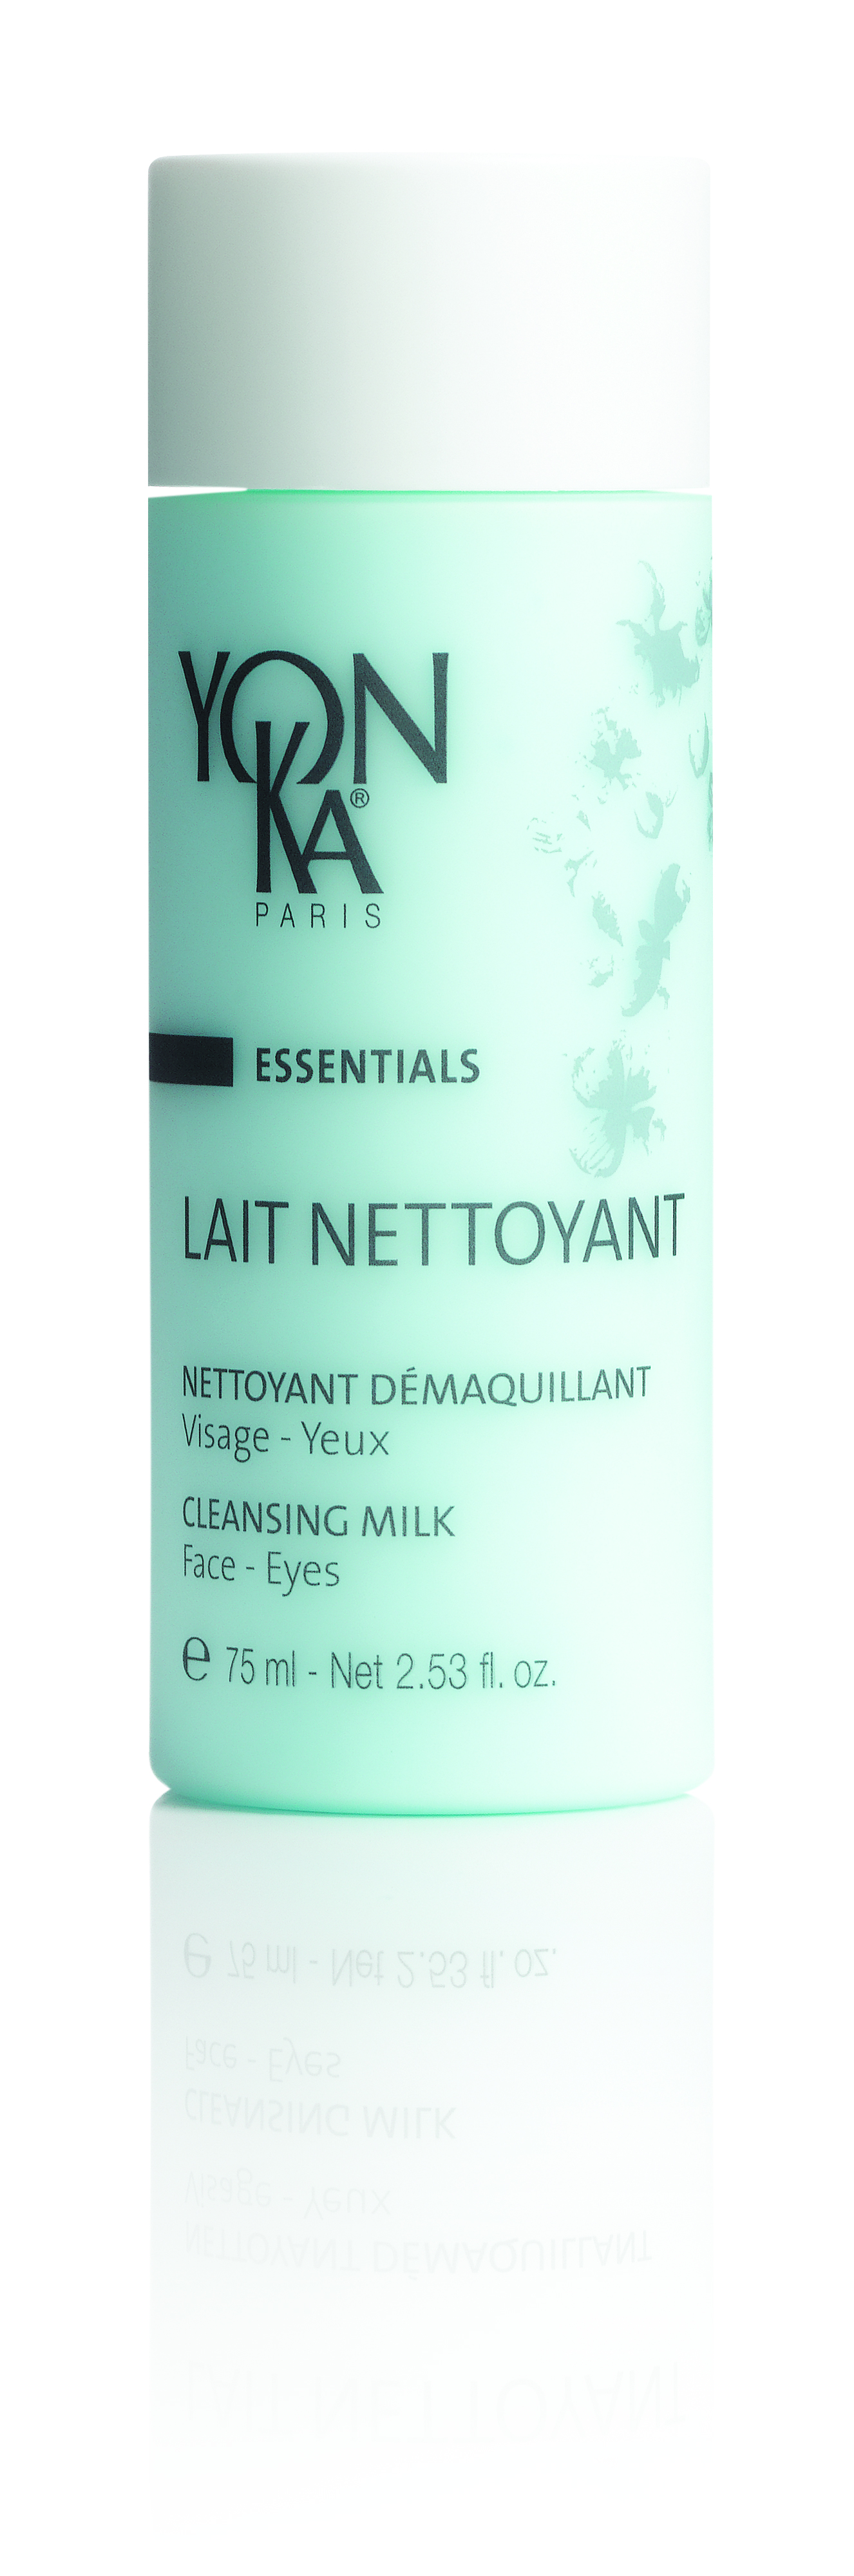 Lait Nettoyant (75ml)